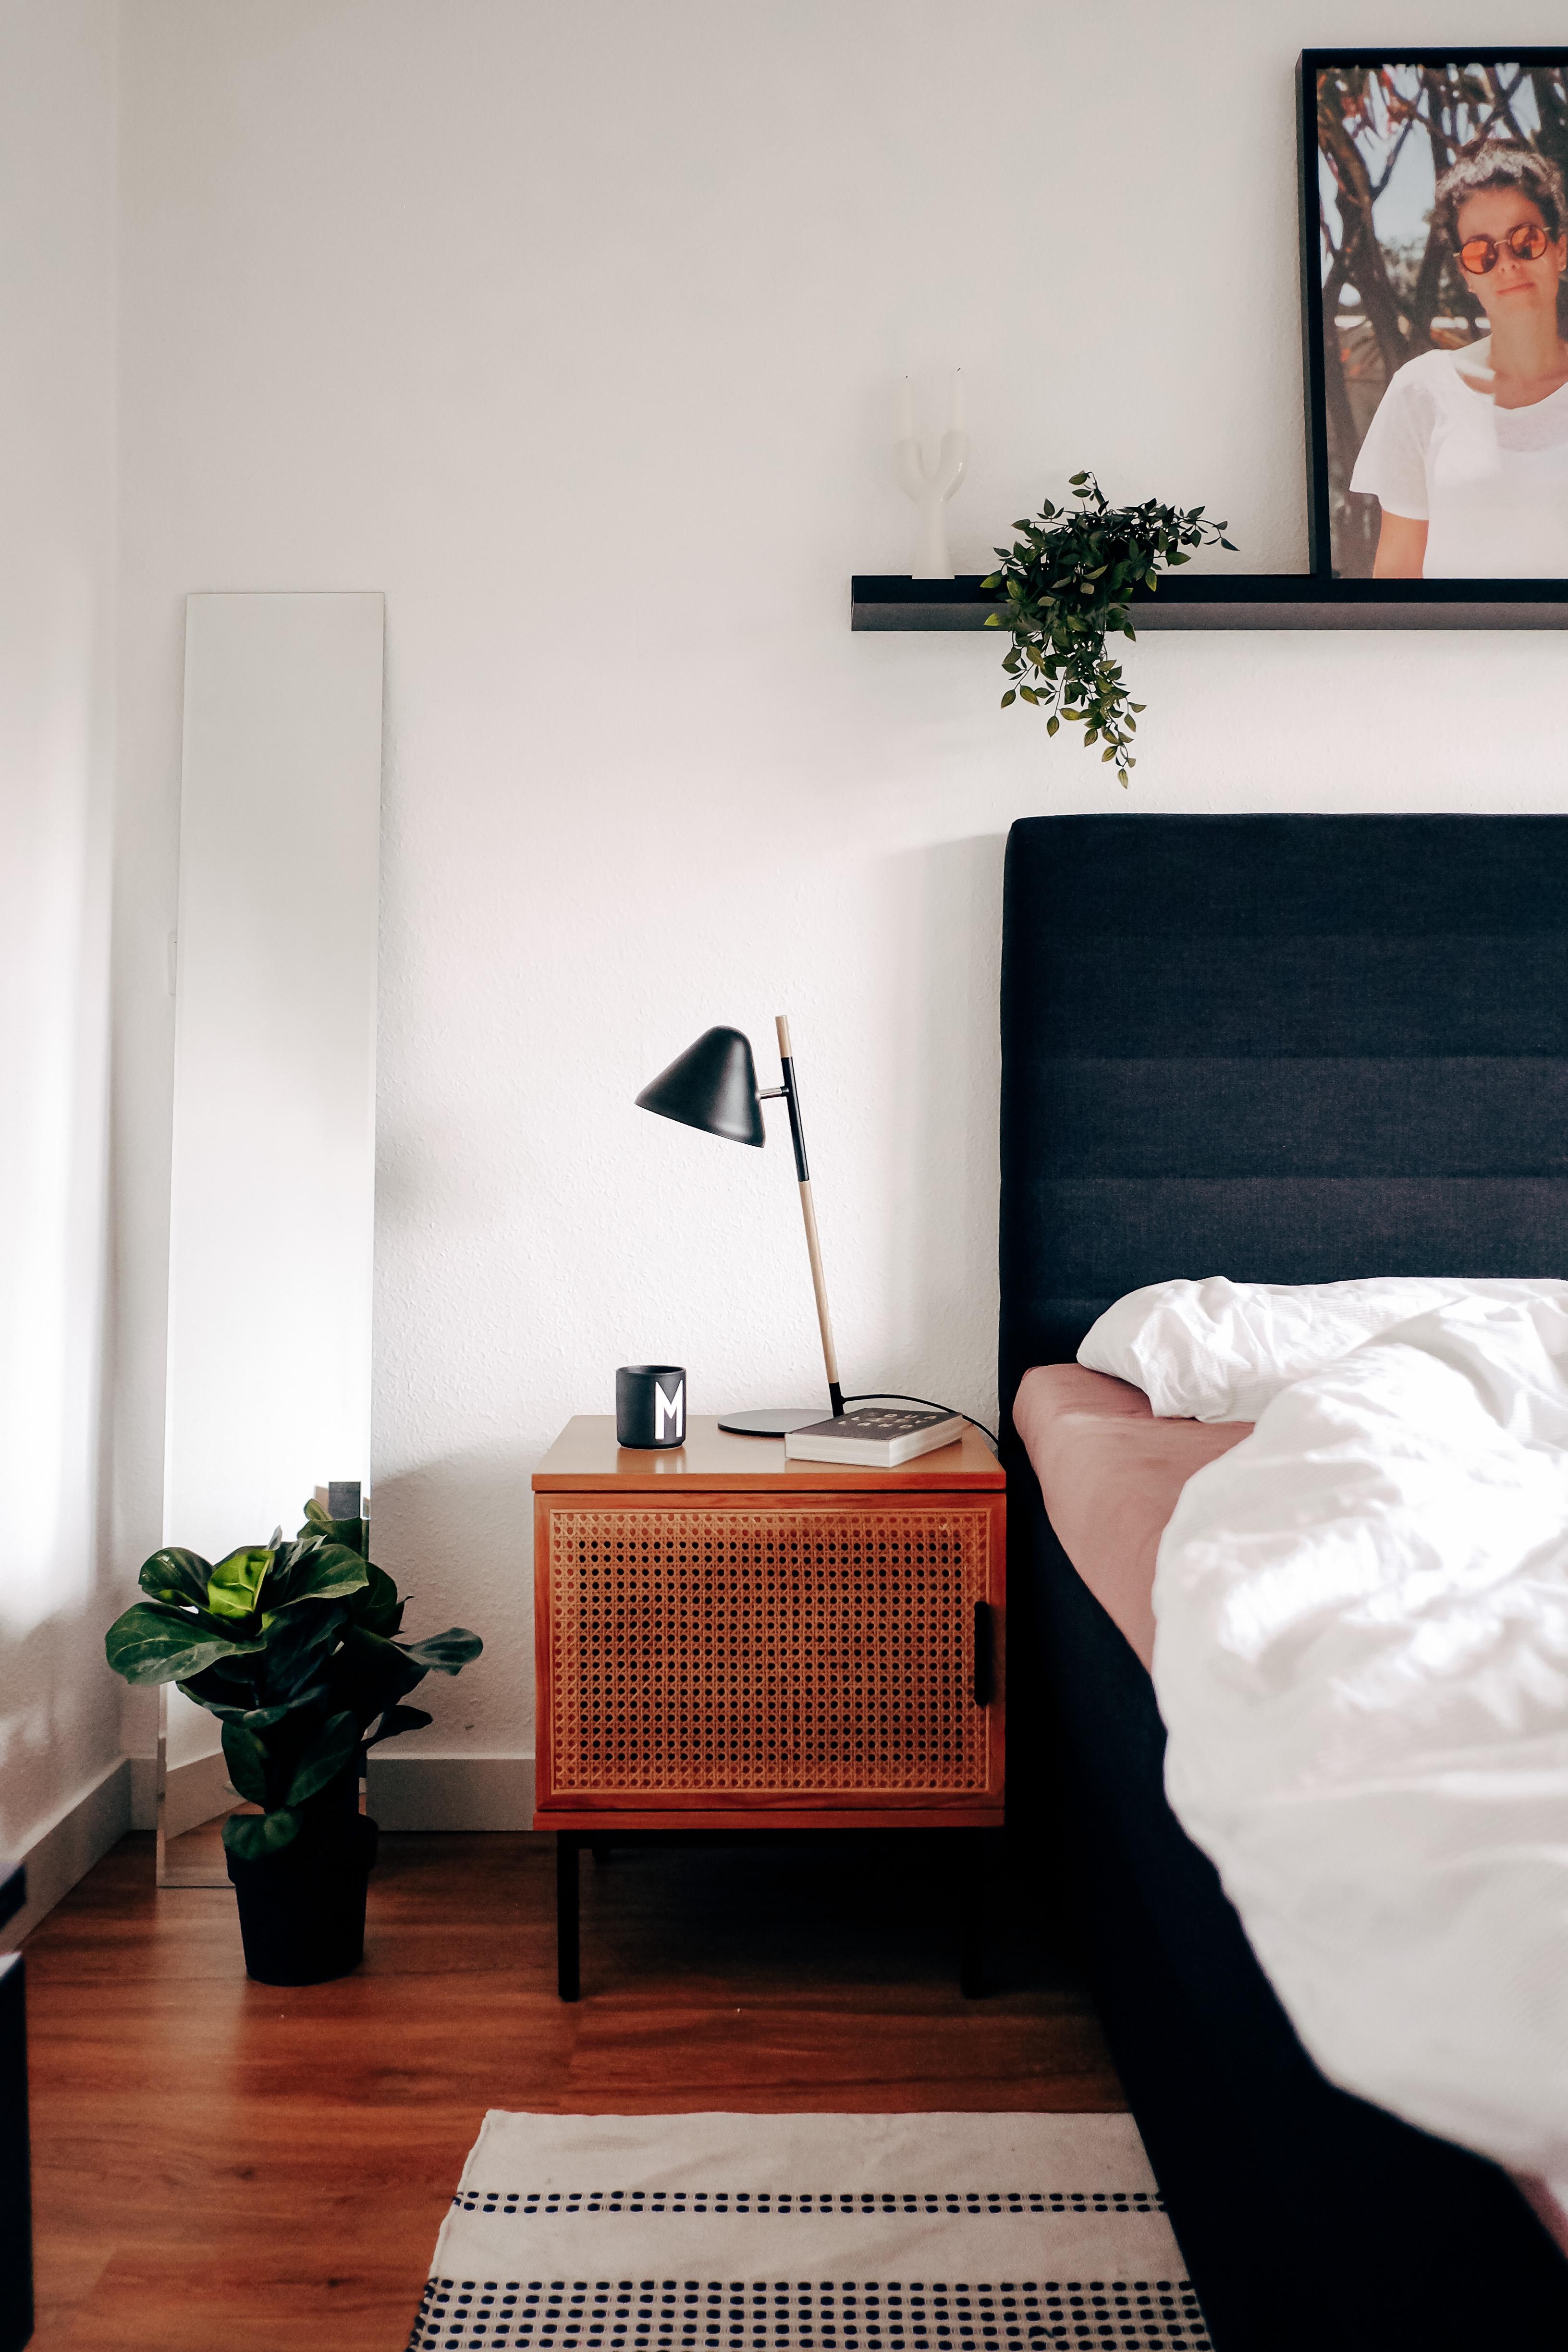 Cozy mornings. #bedroomdesign #bedroom #couchdesign #nachttisch #cozymorning #coffeeinbed #coffeelover #interordesign